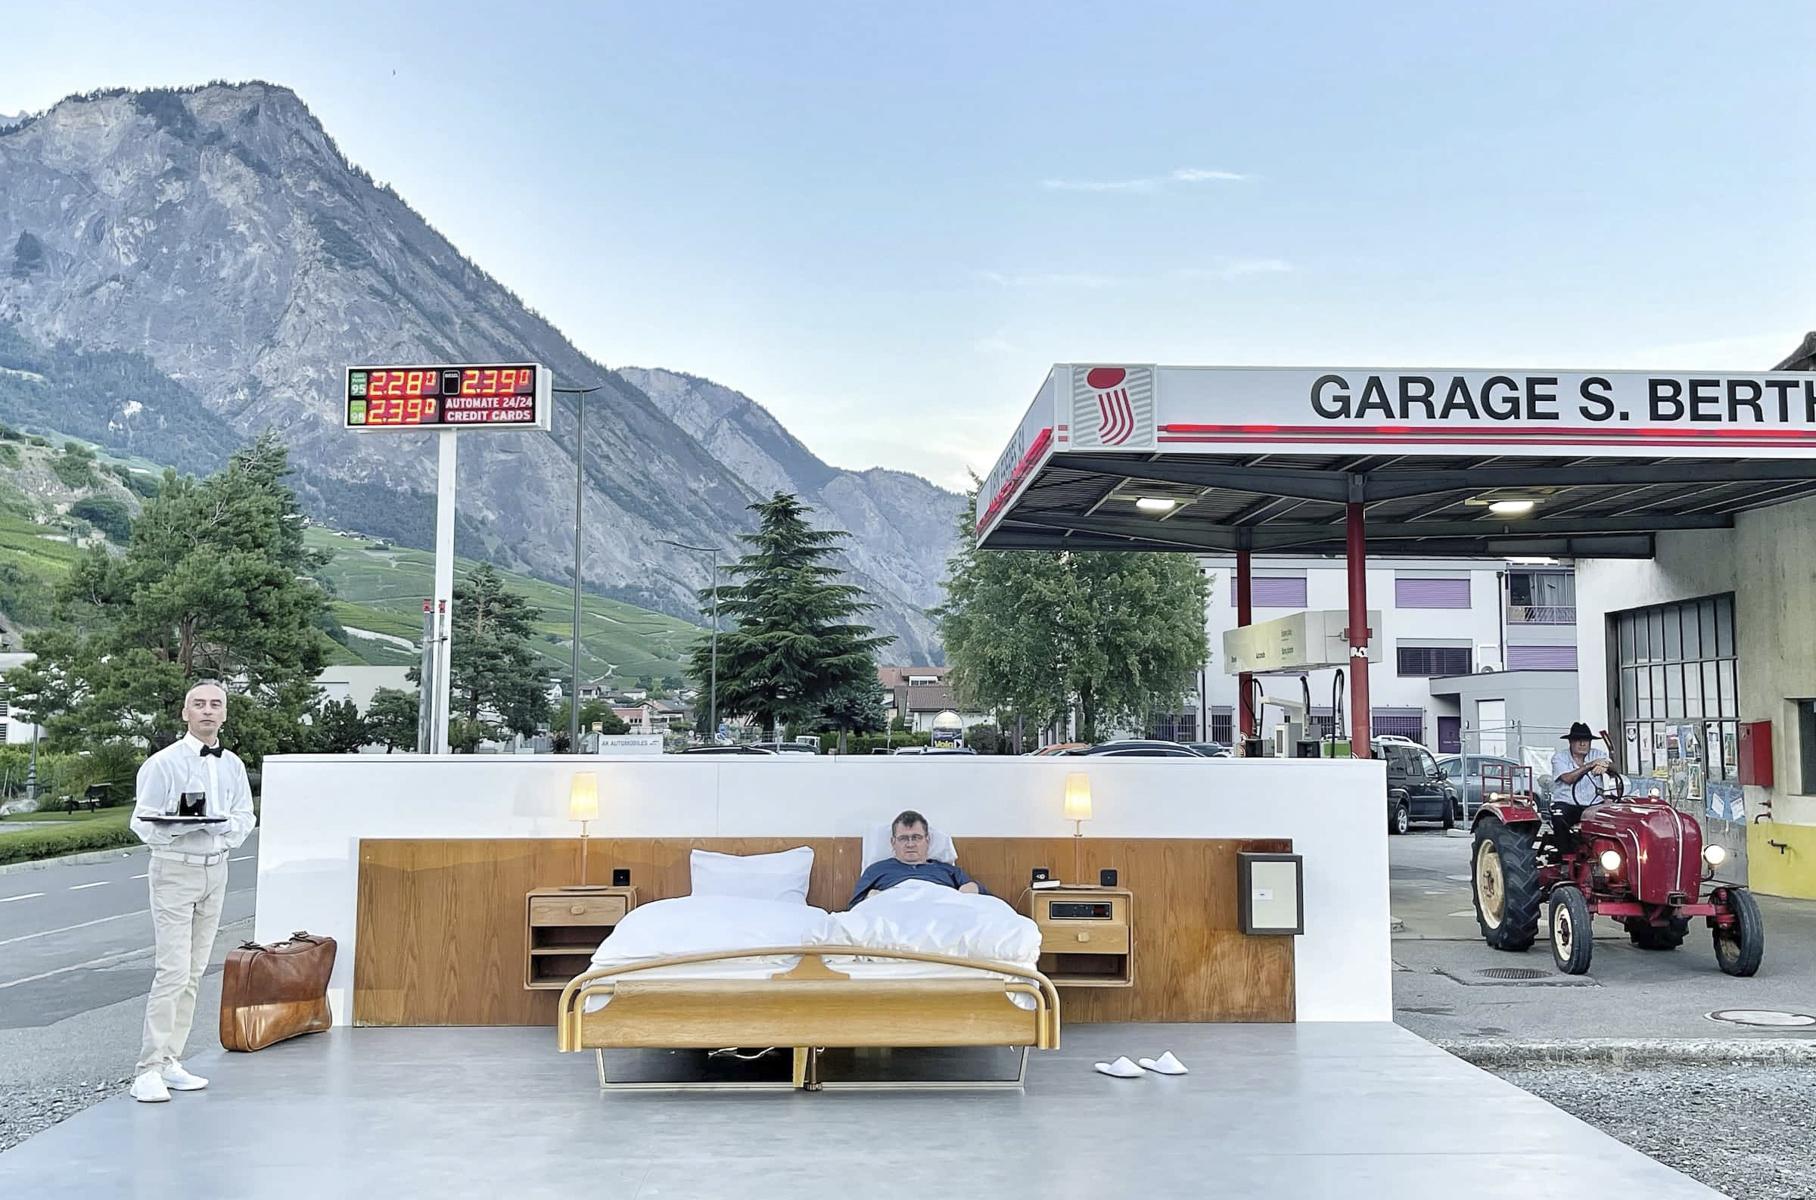 У Швейцарії можна переночувати в готелі "нуль зірок". Прямо на заправці